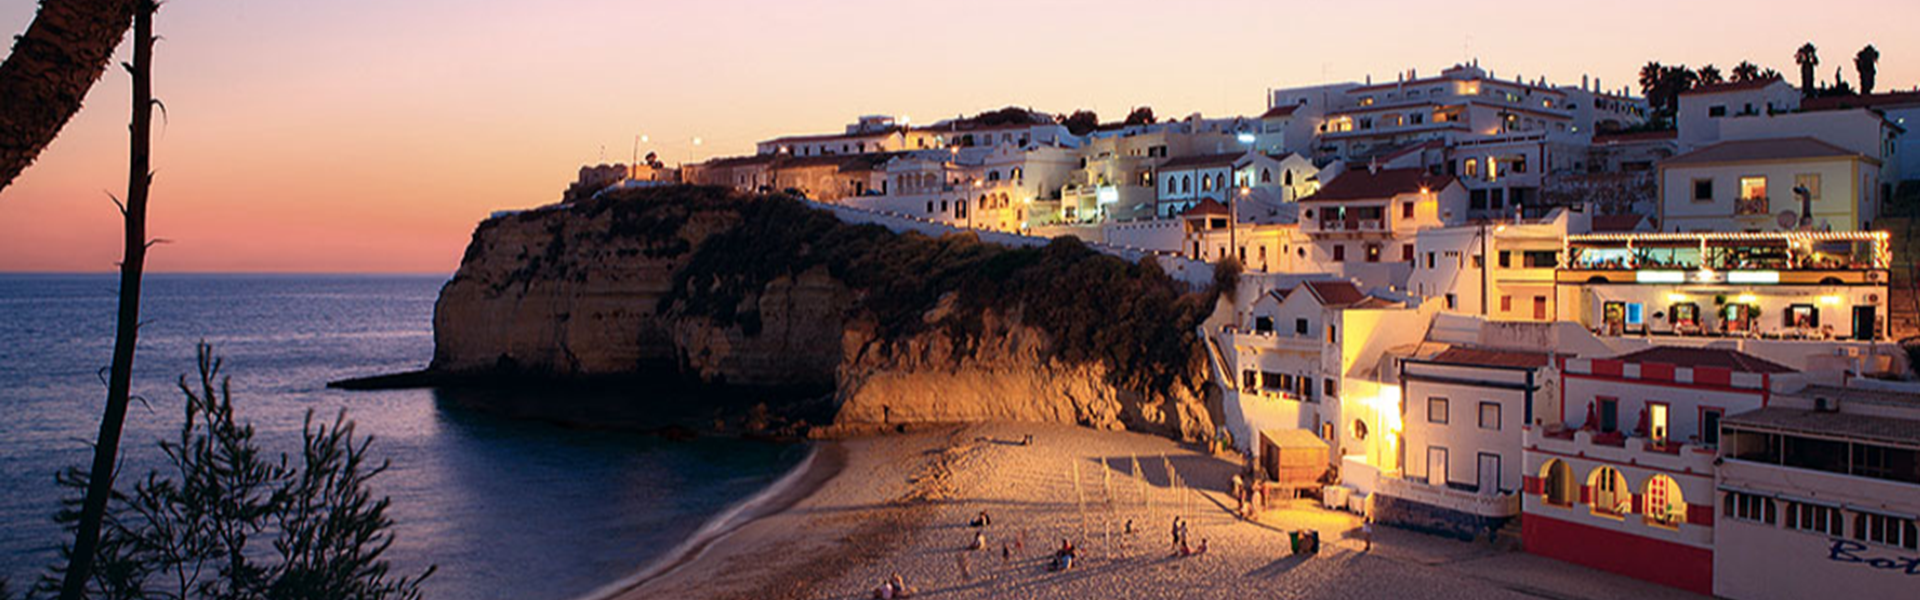 Immobilien, Verkauf, Verkauf, kaufen Tipps, Algarve, bester Preis, bester deal